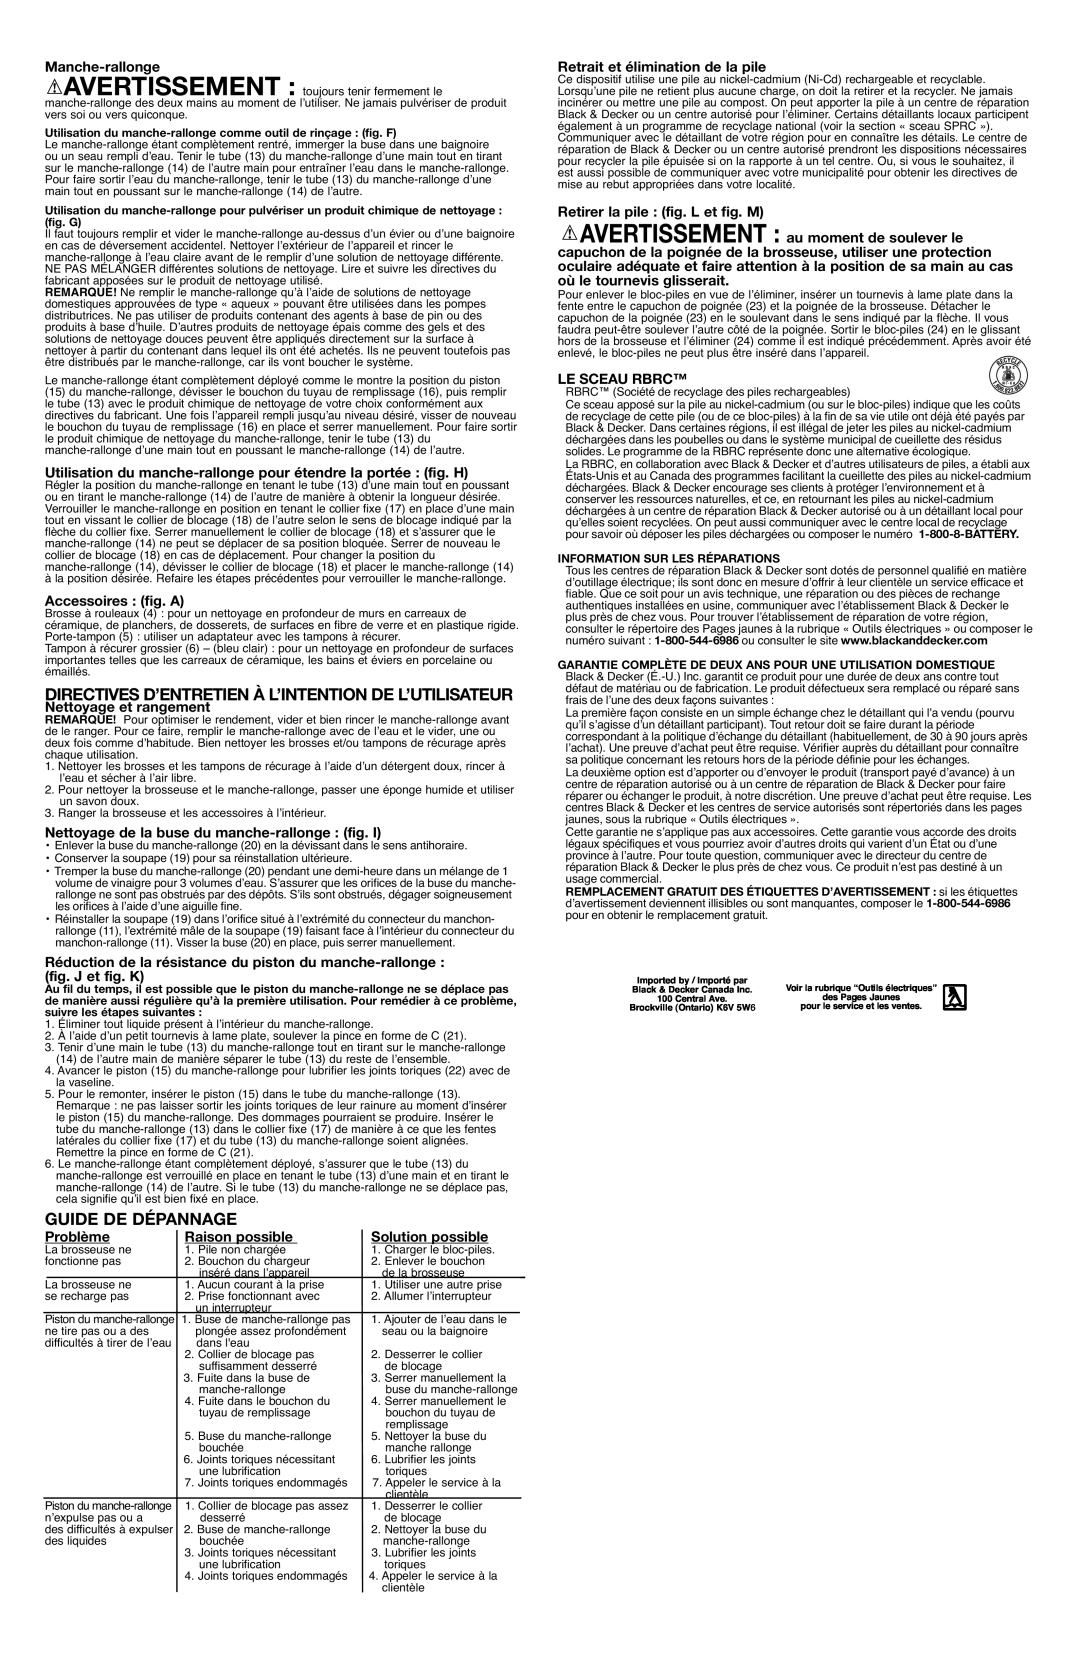 Black & Decker S700E instruction manual Directives D’Entretien À L’Intention De L’Utilisateur, Guide De Dépannage 